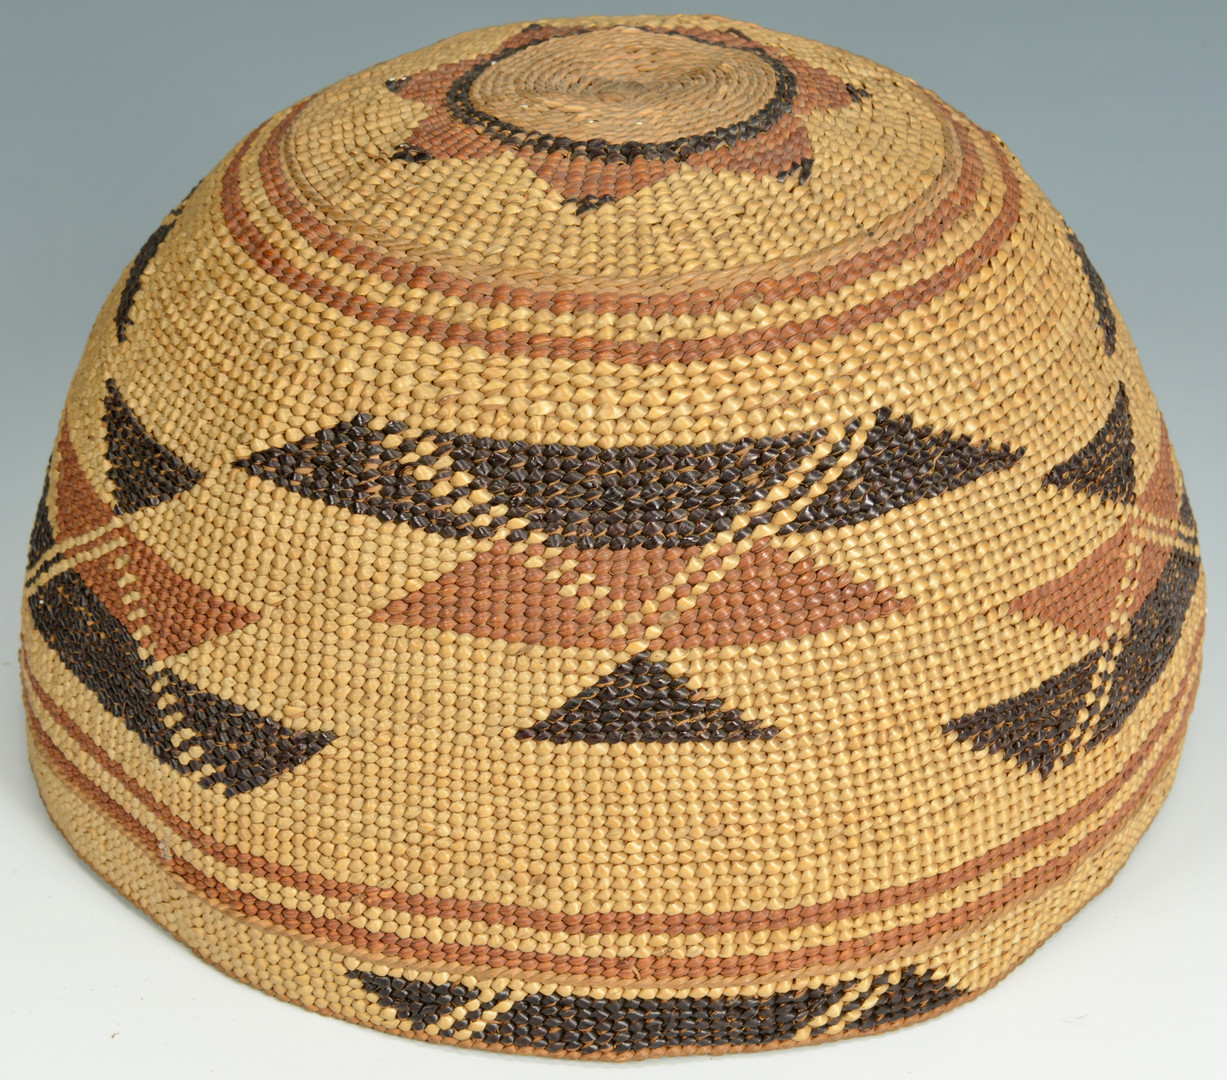 Lot 342: 2 Northwest Indian Baskets, Tlinglet or Karok